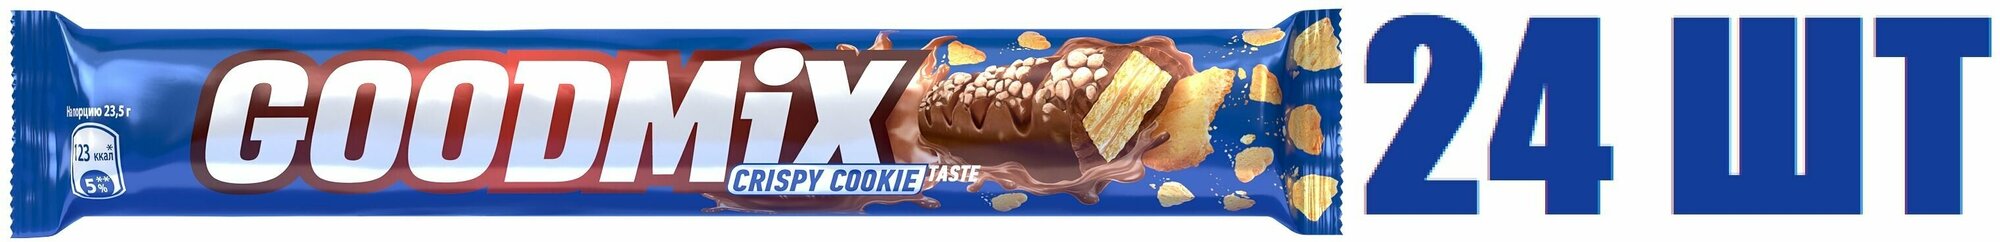 Шоколадный батончик, "Россия - Щедрая душа! GoodMix", со вкусом печенья, с хрустящей вафлей, 47г, 24 шт